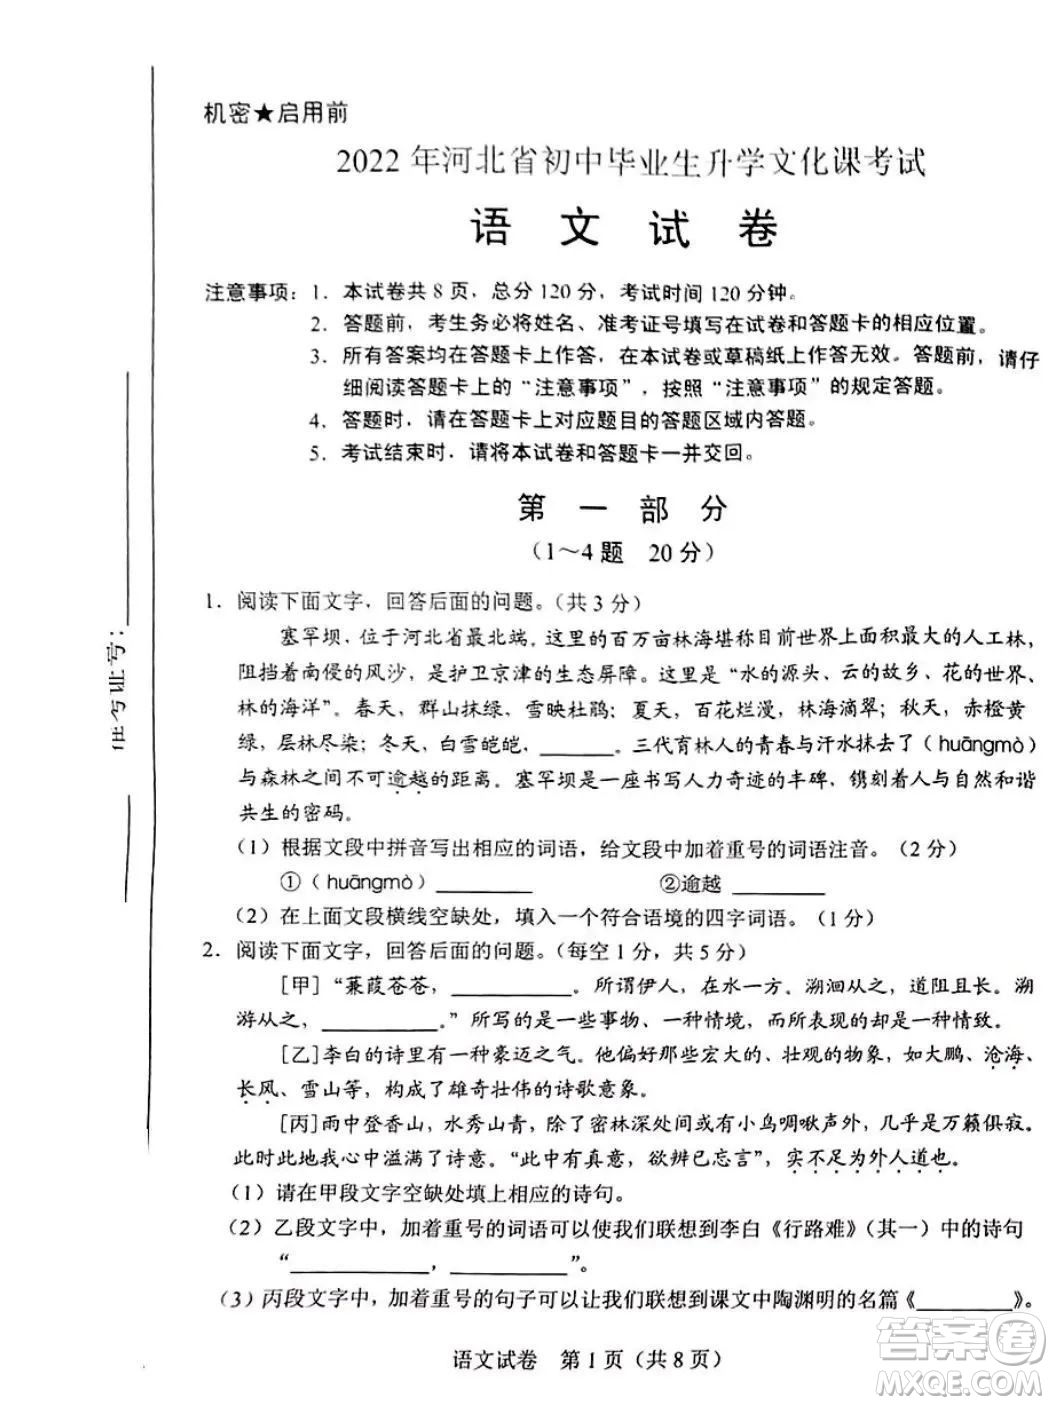 2022年河北省初中毕业生升学文化课考试语文试卷及答案插图(1)